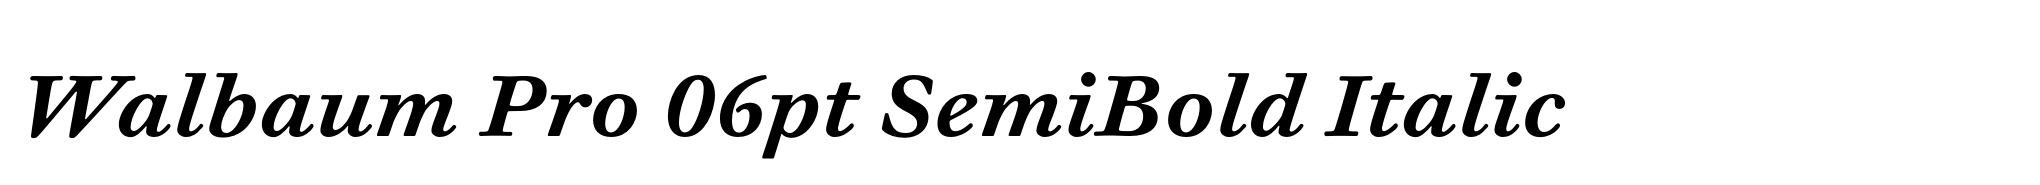 Walbaum Pro 06pt SemiBold Italic image